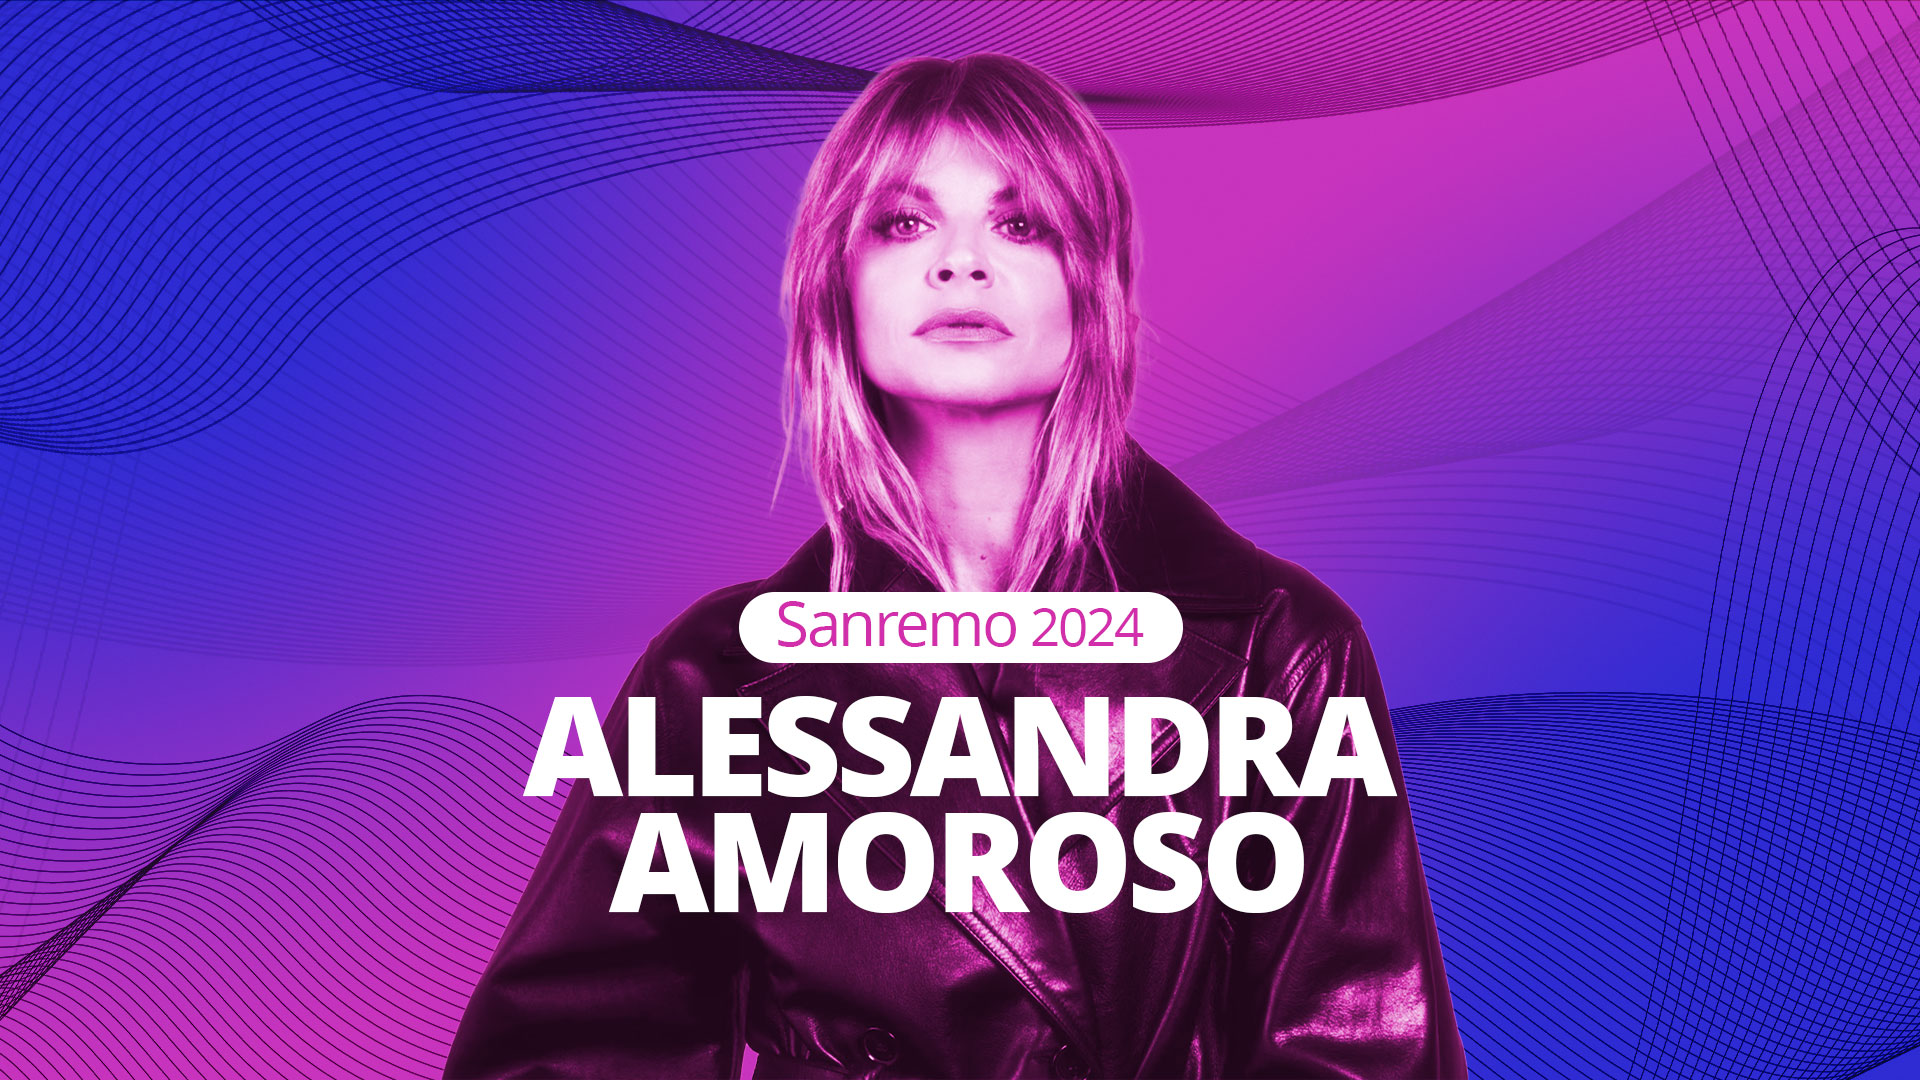 Alessandra Amoroso a Sanremo 2024: “Felice di essere in gara con